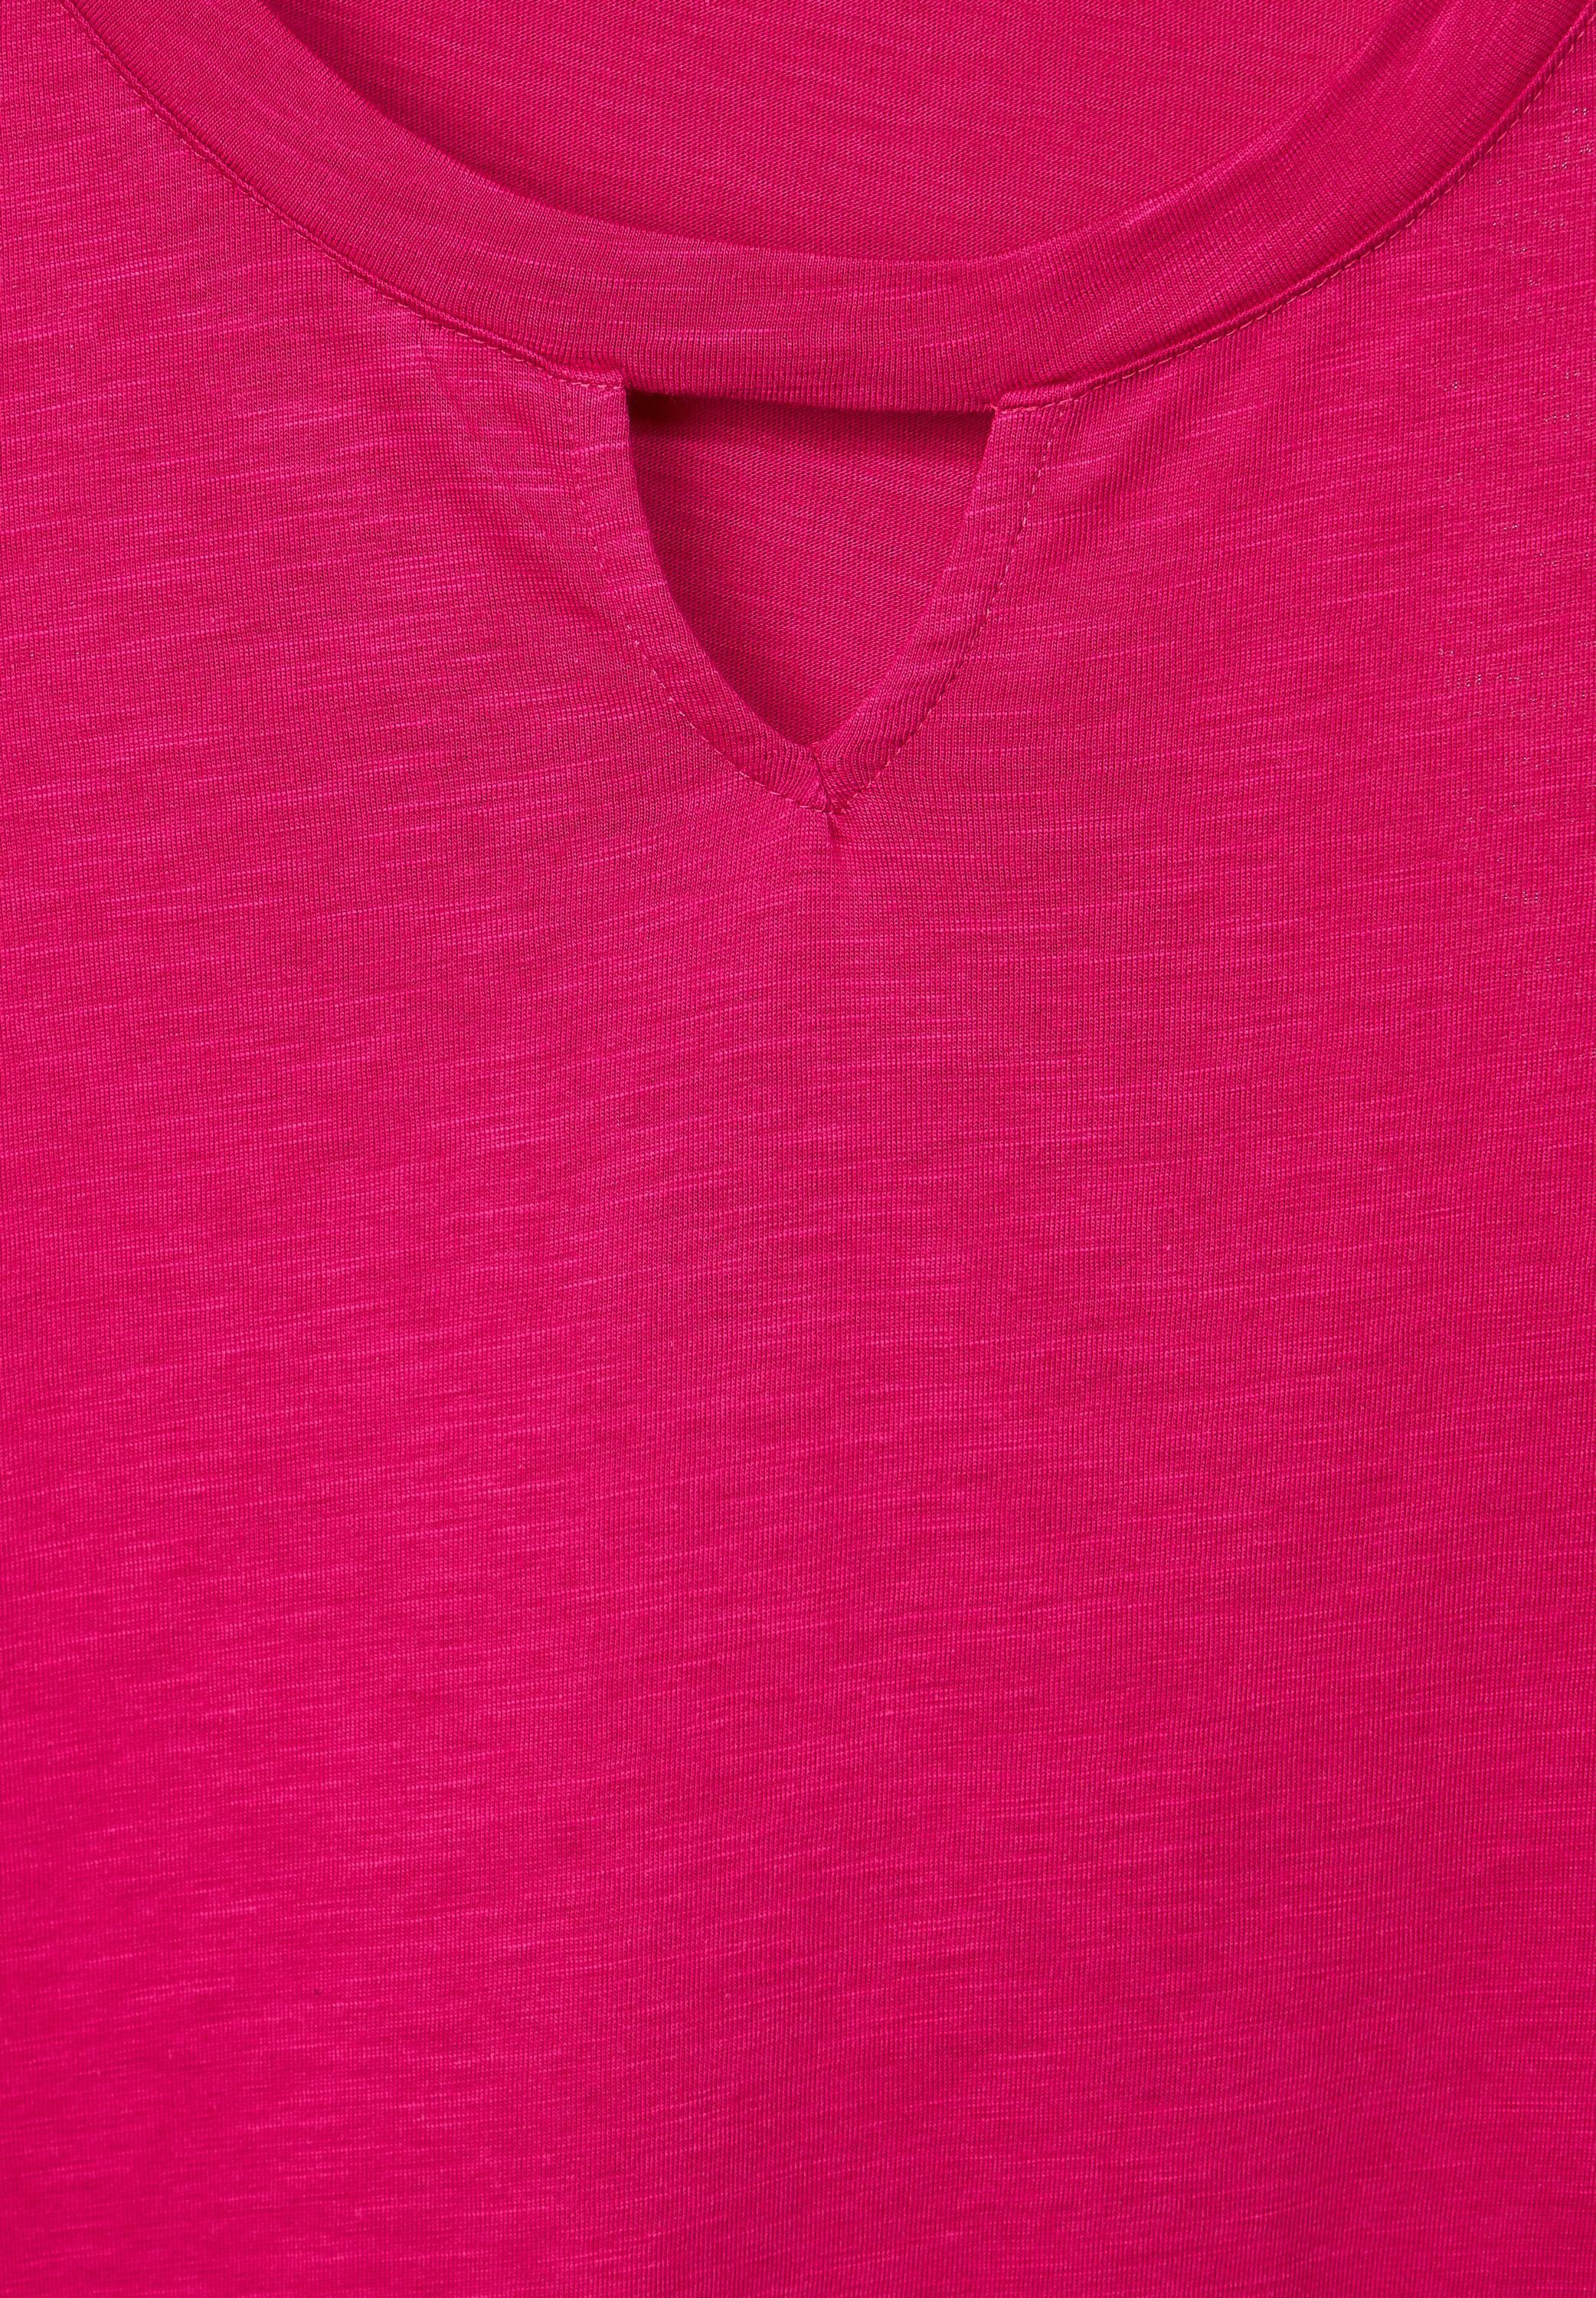 T-Shirt softem Cecil cool aus pink Materialmix